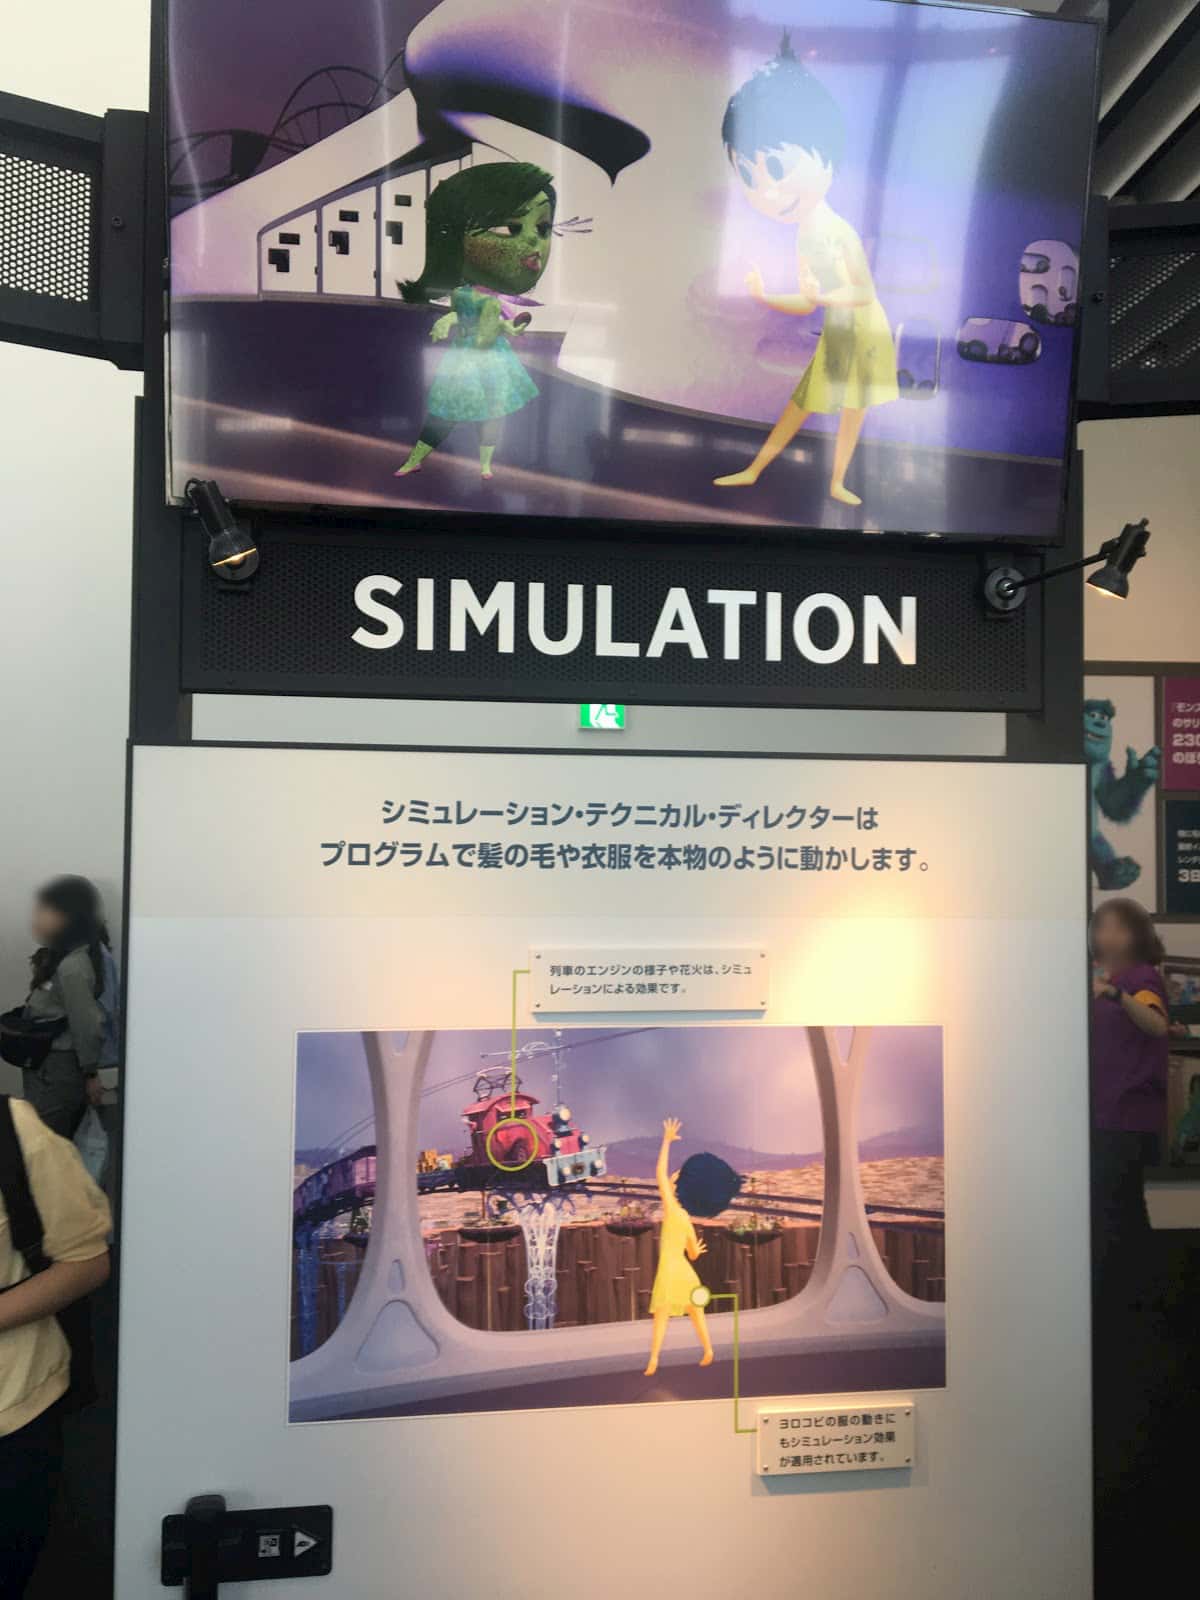 Simulation panel